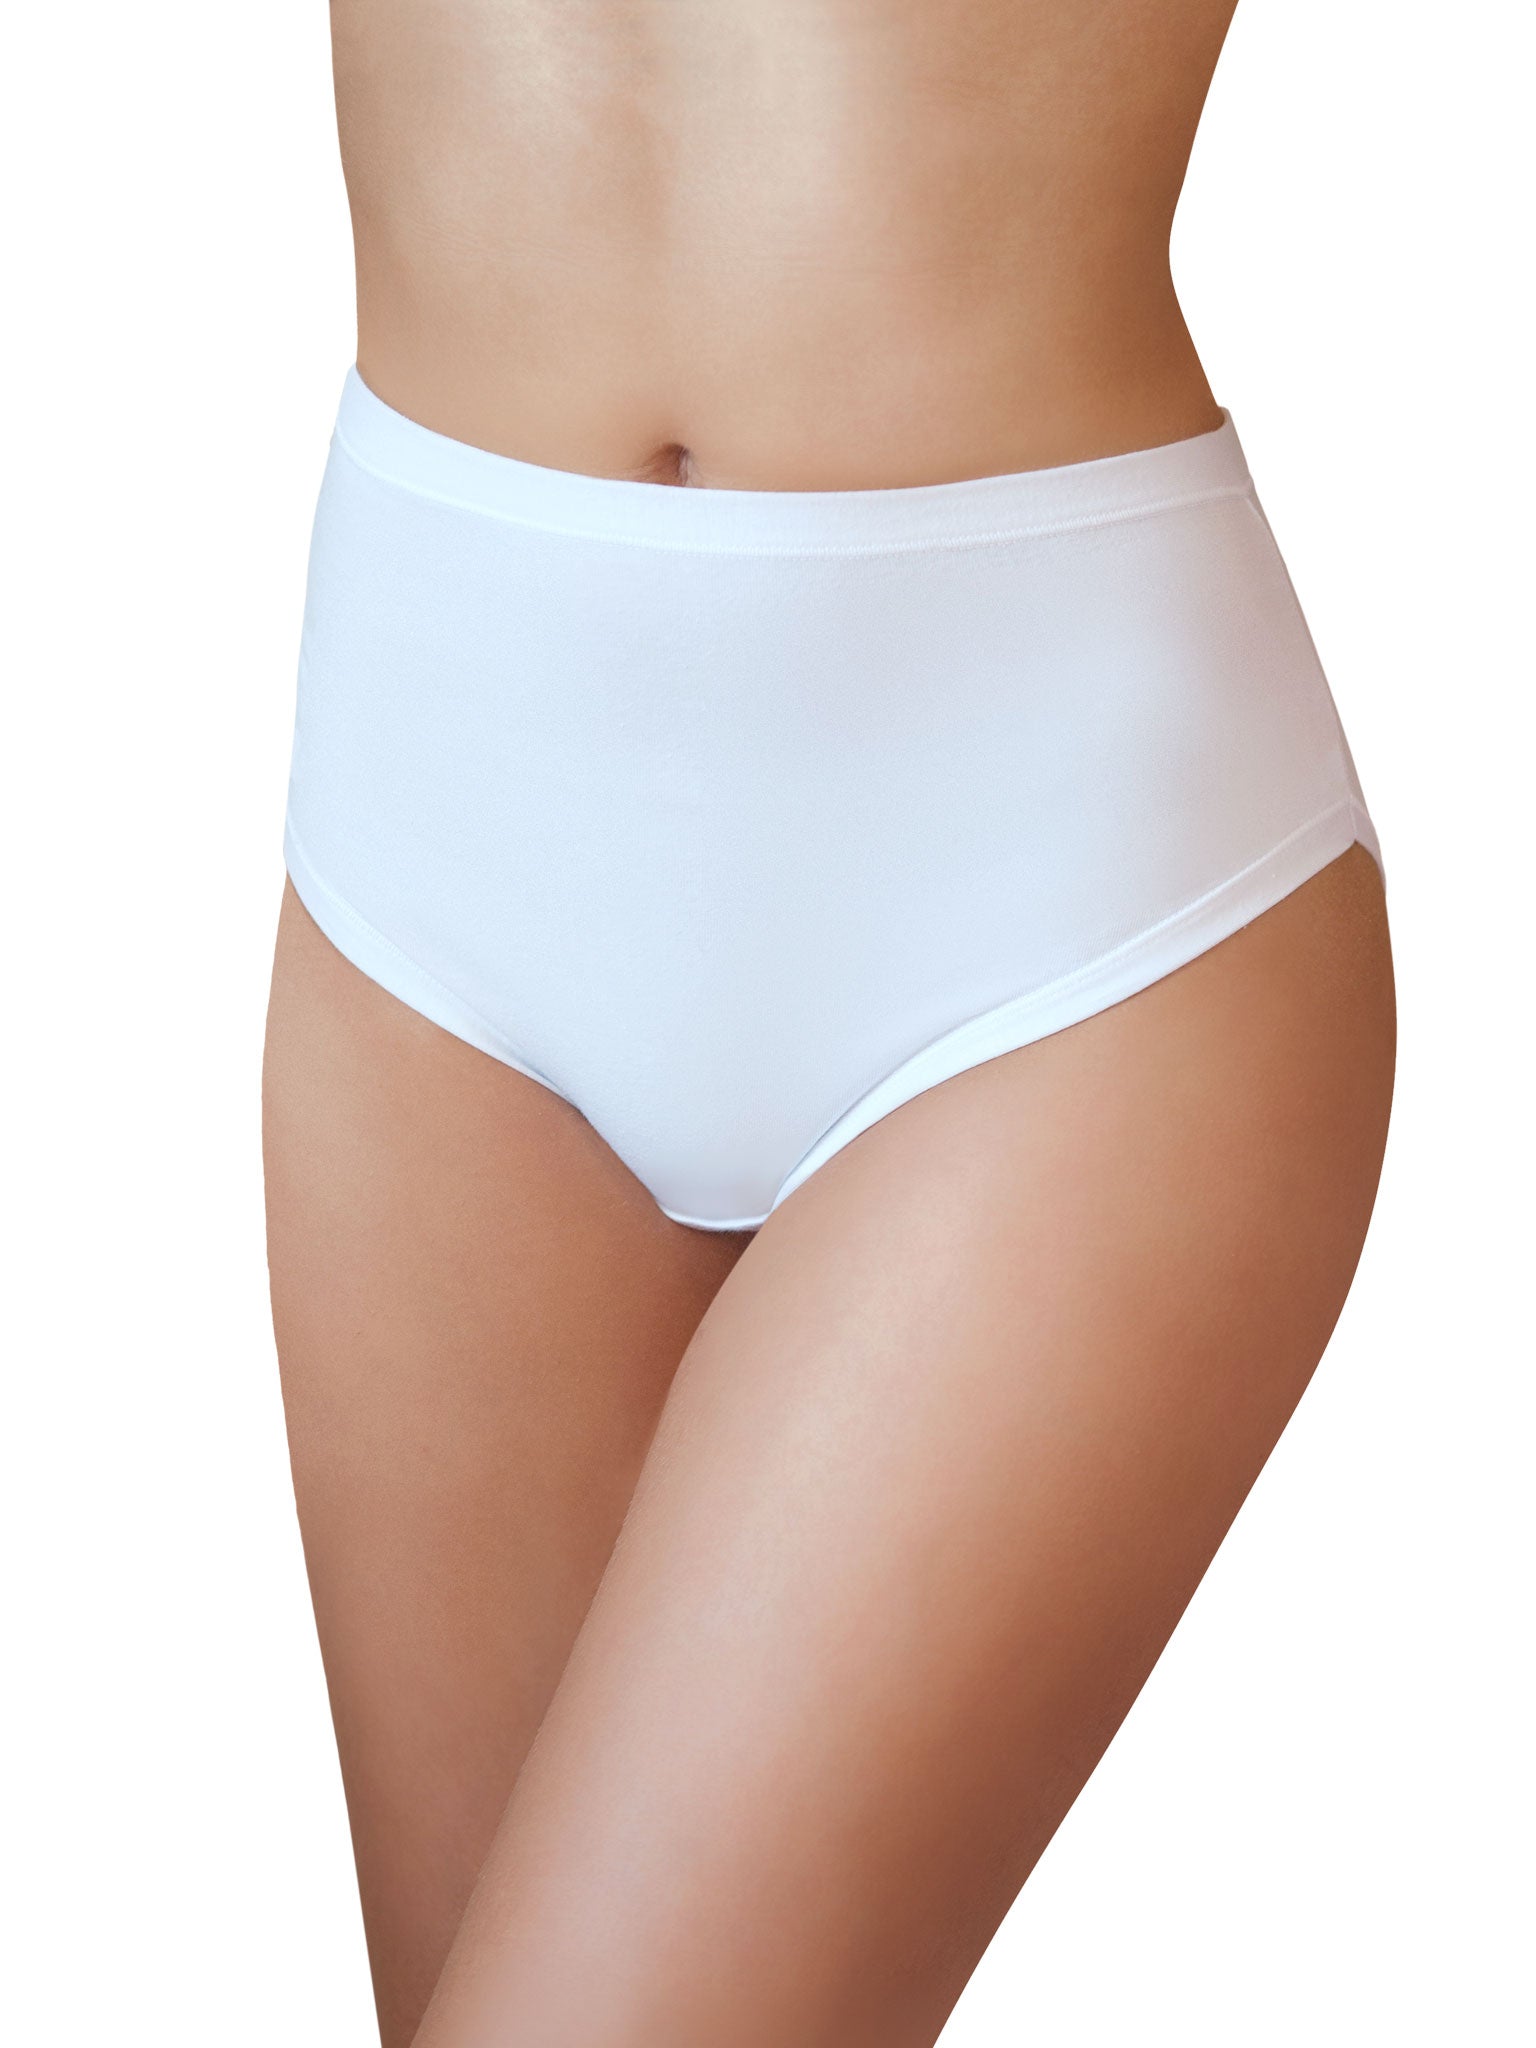 Stretch thong underwear women's low waist sexy sexy briefs short